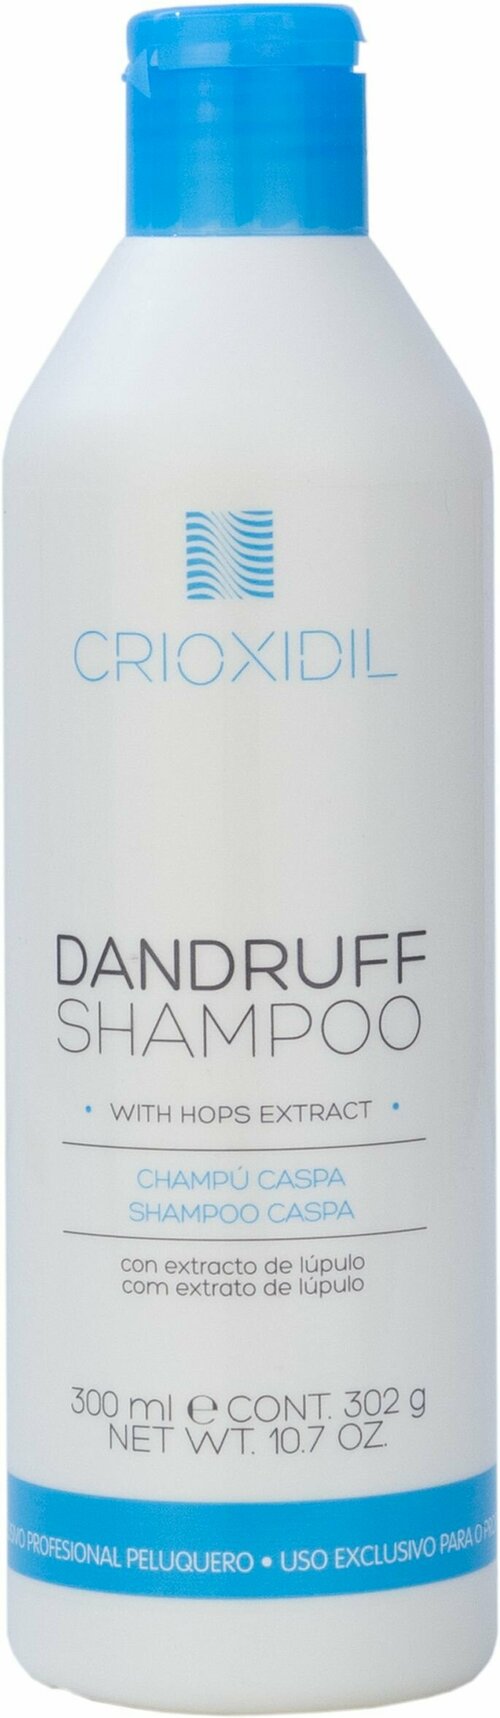 Профессиональный шампунь против перхоти Crioxidil Dandruff shampoo, 300 мл